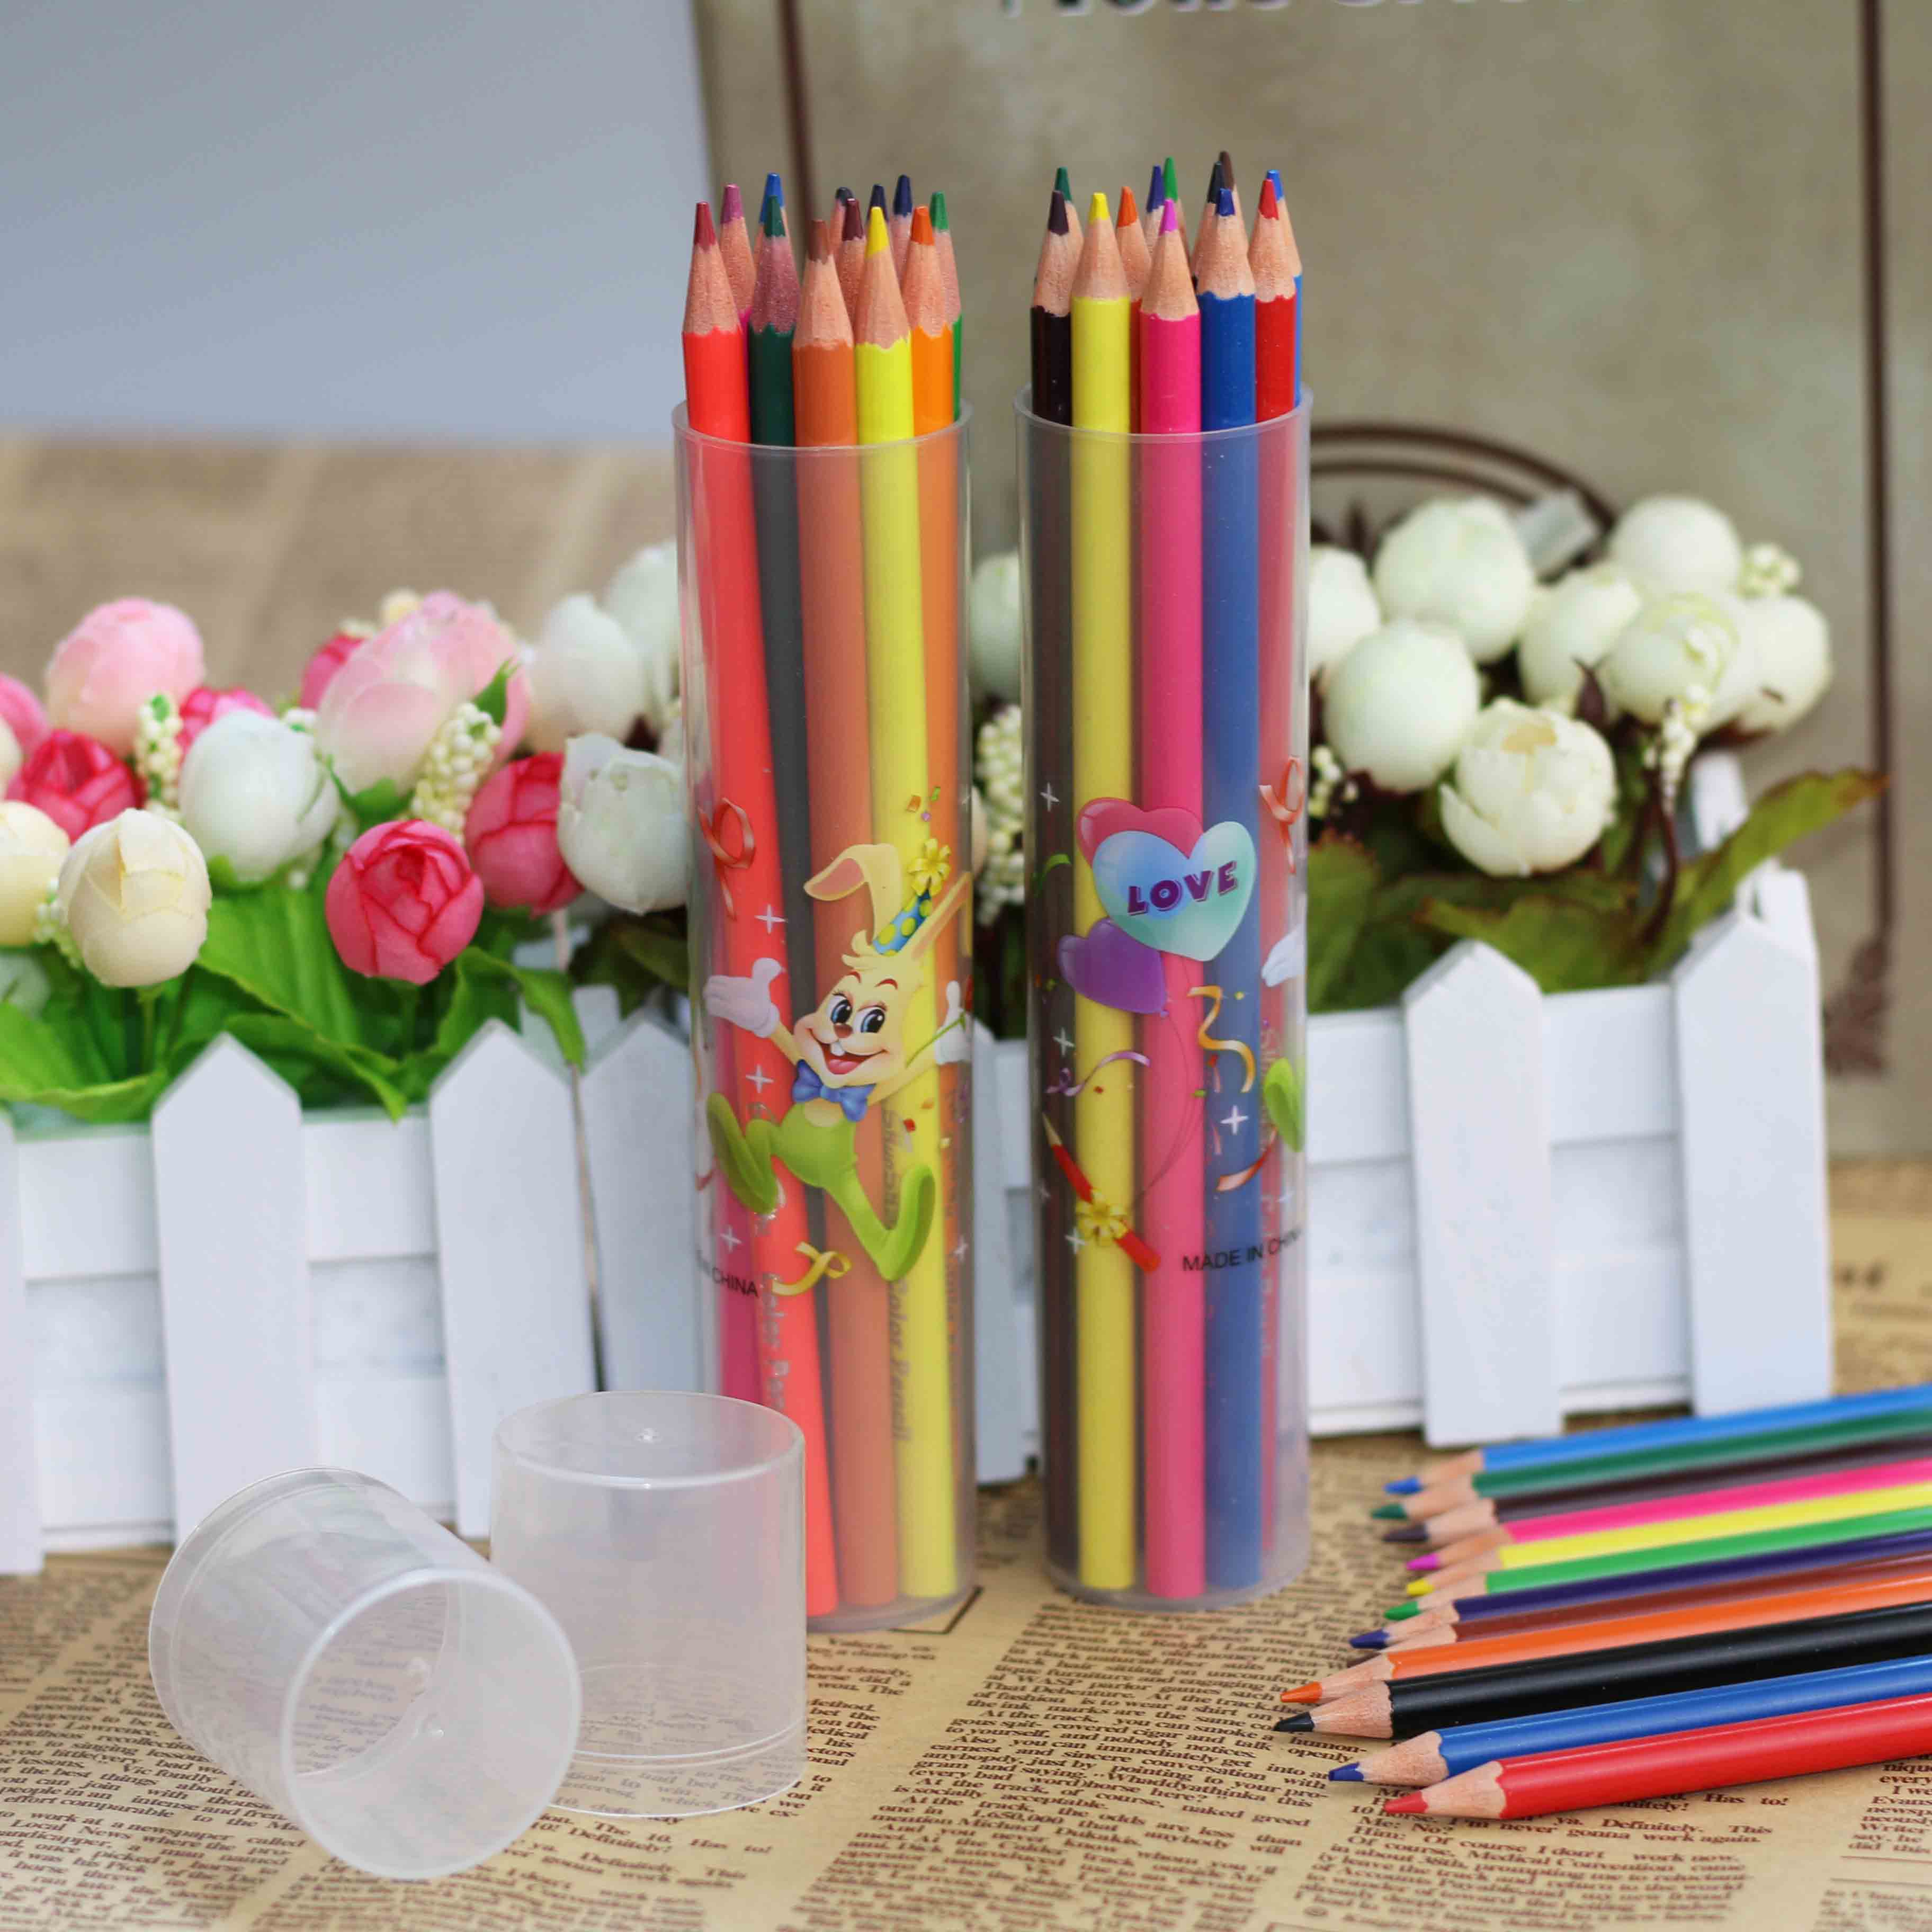 浙江浙江供应顺手牌12色环保塑料彩色铅笔学生绘图铅笔学生文具厂家